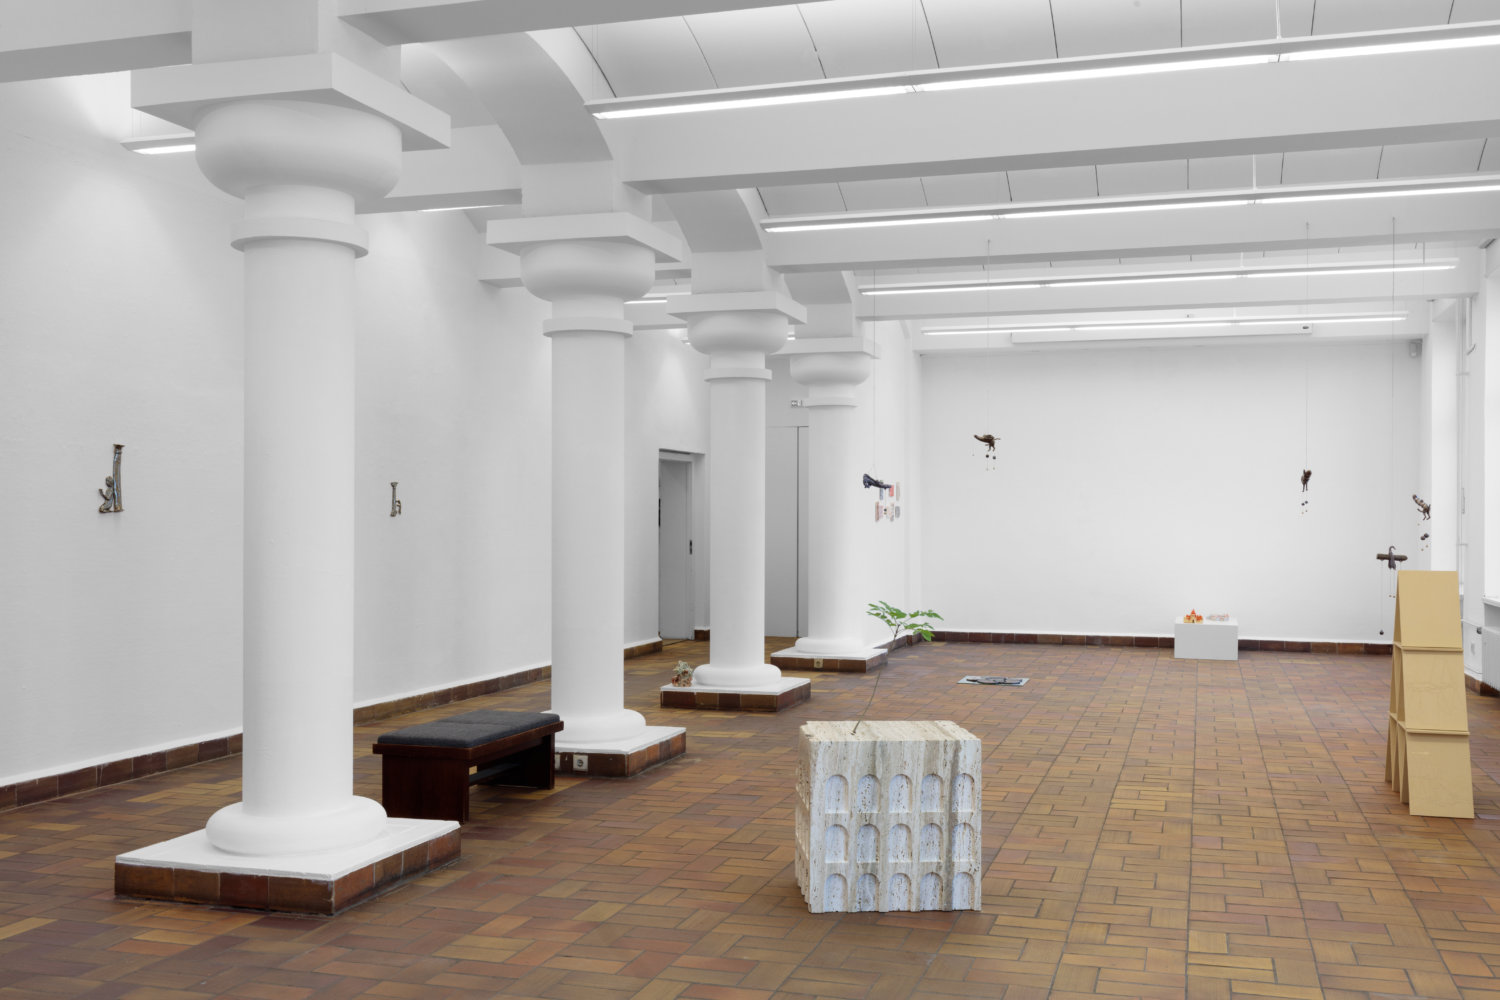 Raumansicht der Galerie Parterre in Berlin. Es sind Arbeiten von Lukas Liese und Zoe Claire Miller zu sehen.